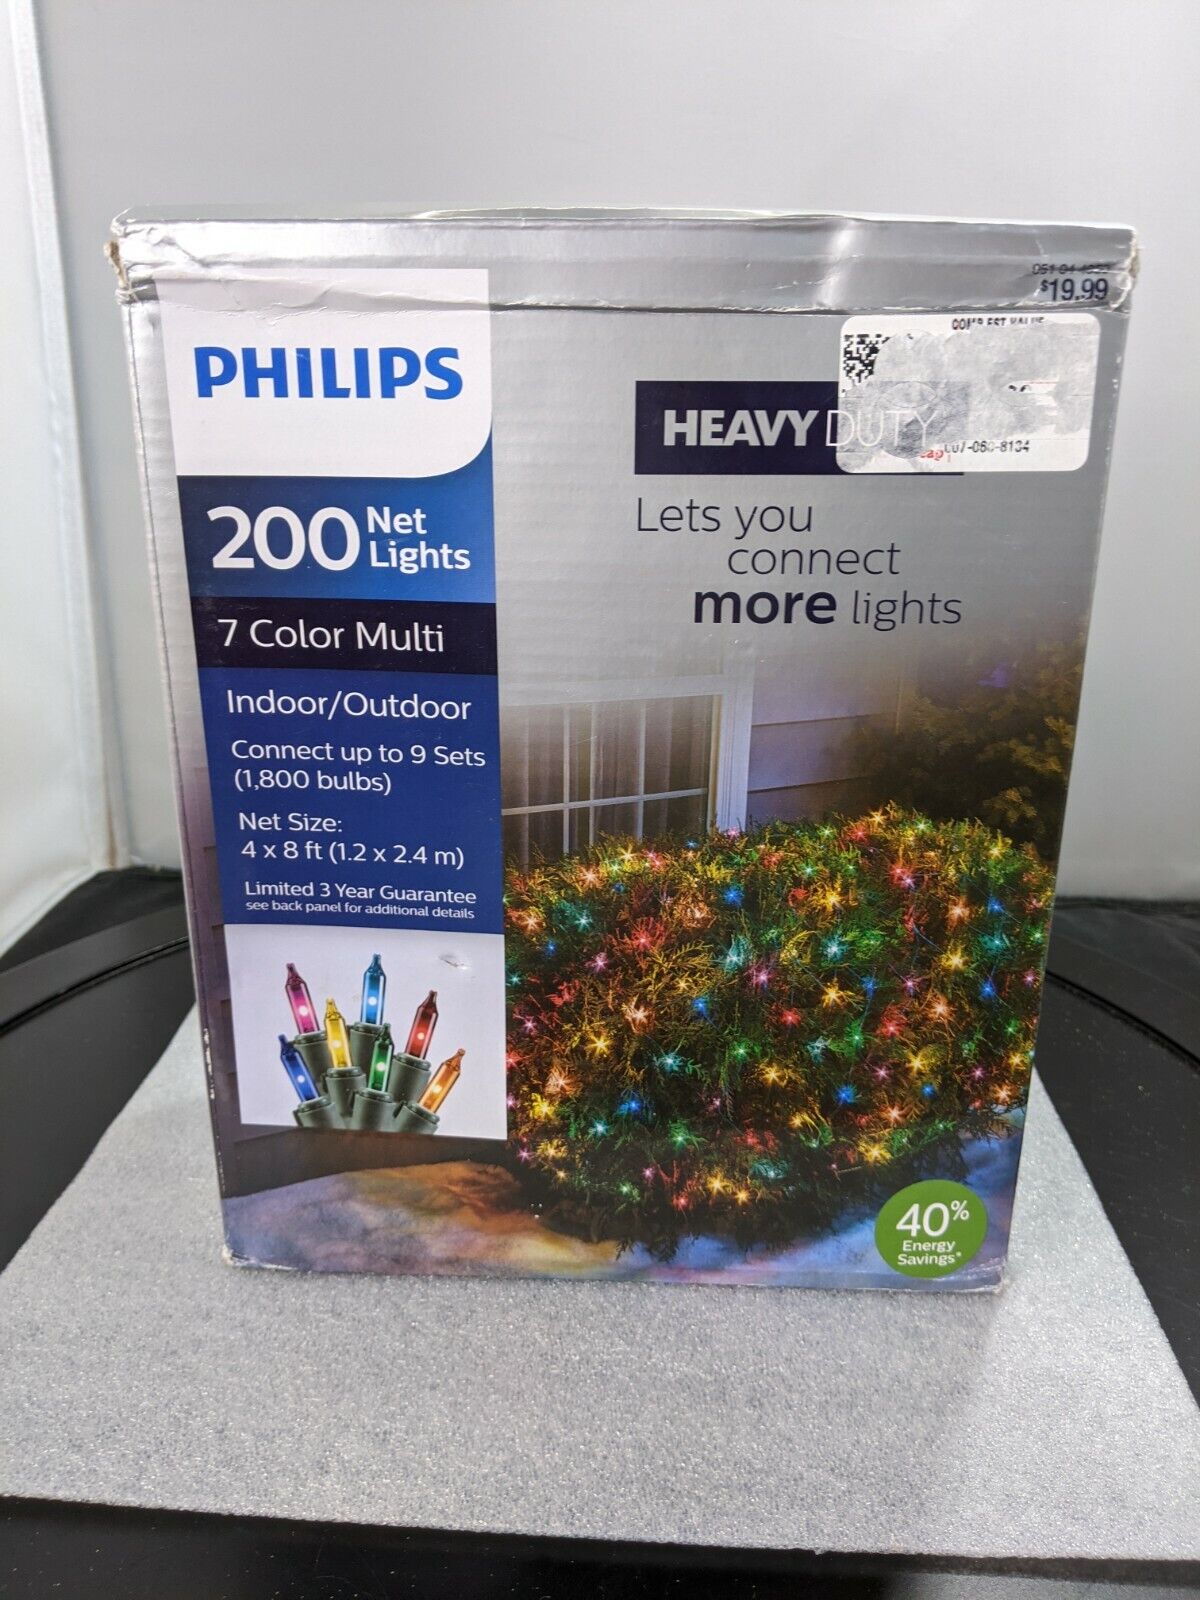 Philips 200 Net Lights 4x8 ft 7 Color Multi Indoor/Outdoor Green Wire Stays Lit